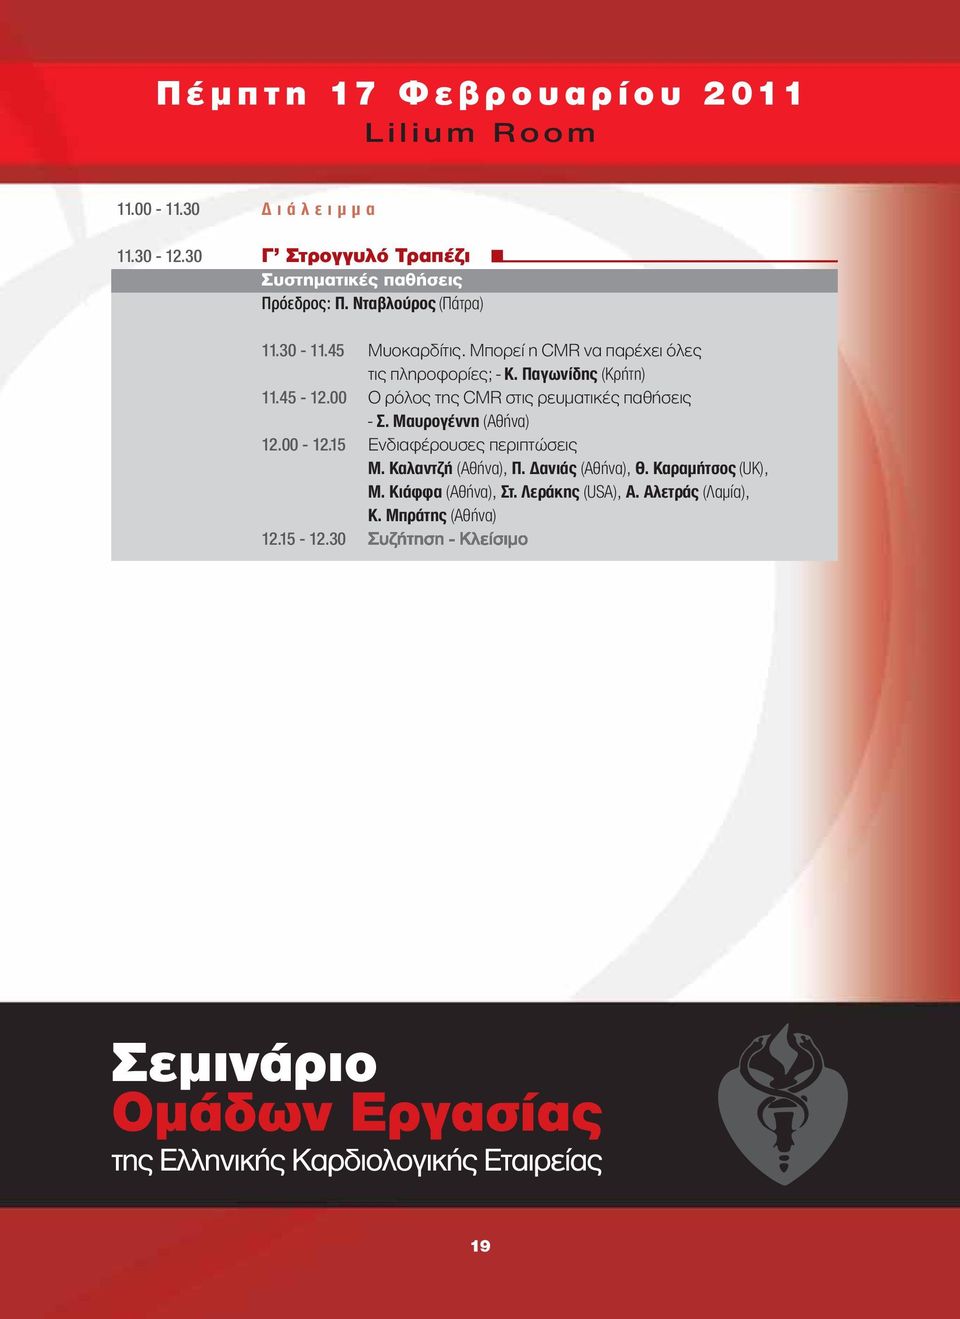 00 Ο ρόλος της CMR στις ρευματικές παθήσεις - Σ. Μαυρογέννη (Αθήνα) 12.00-12.15 Ενδιαφέρουσες περιπτώσεις Μ.